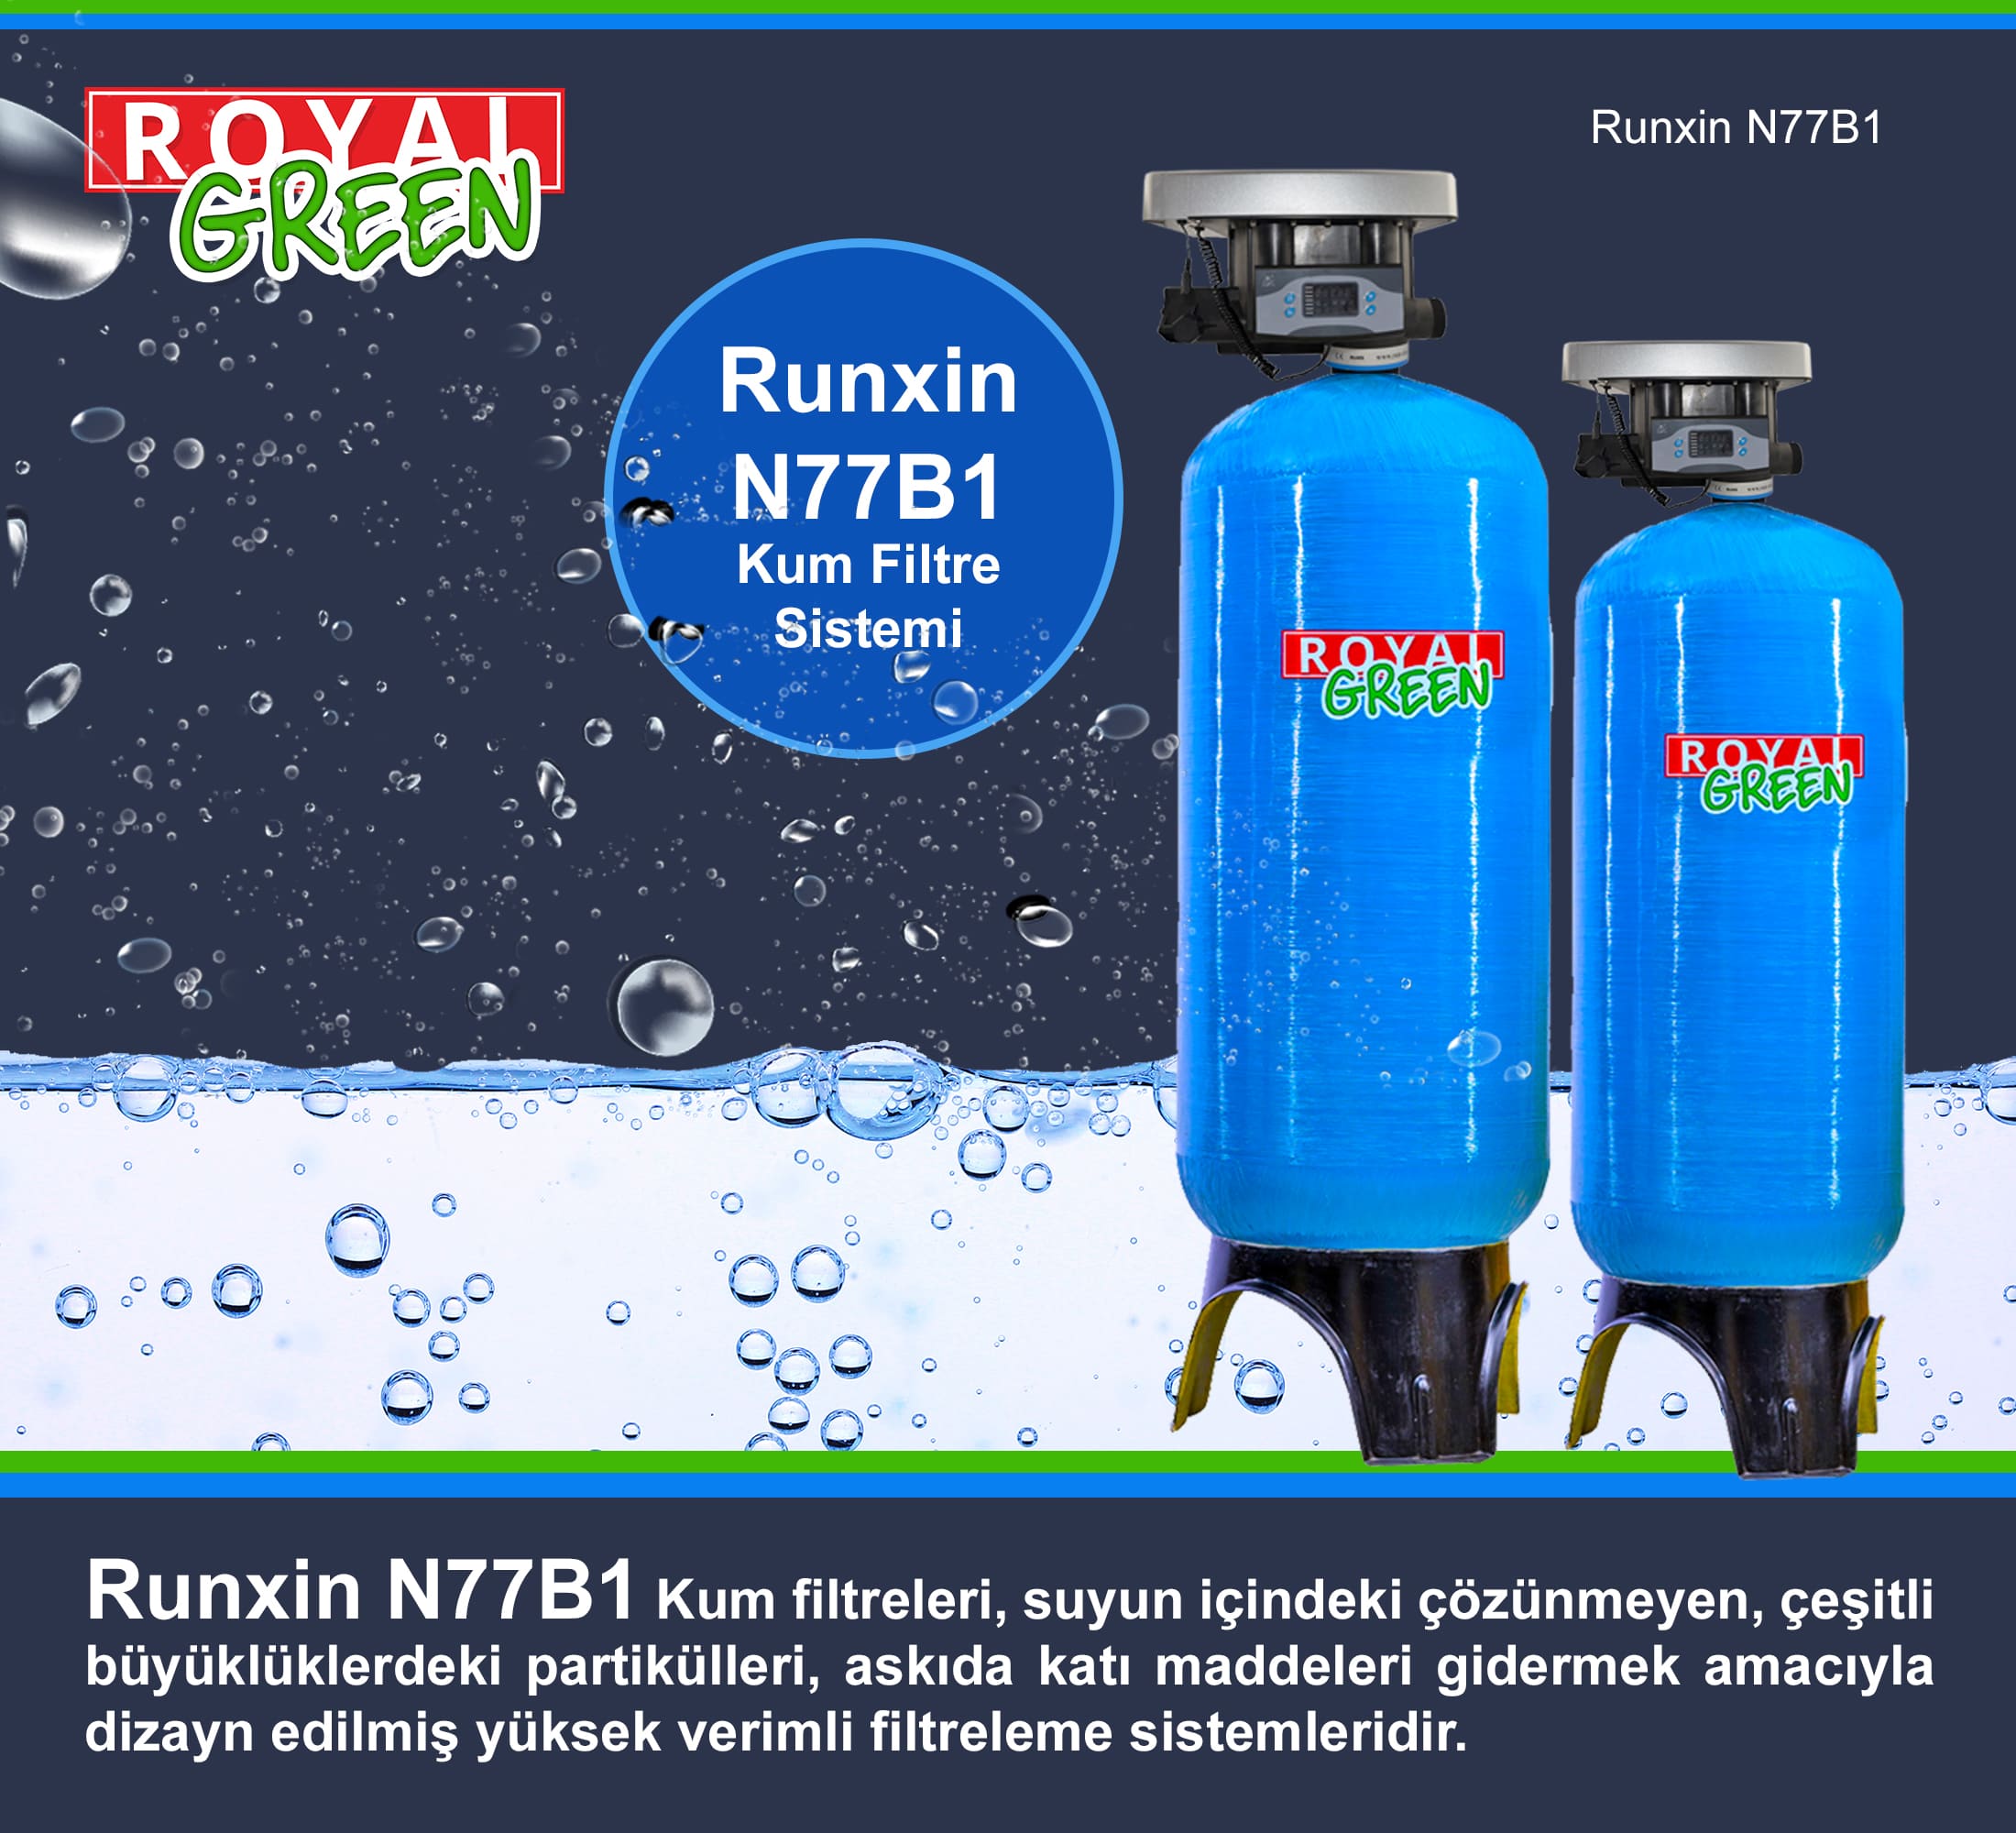 Runxin N77B1 Kum Filtre Sistemi Banneri min